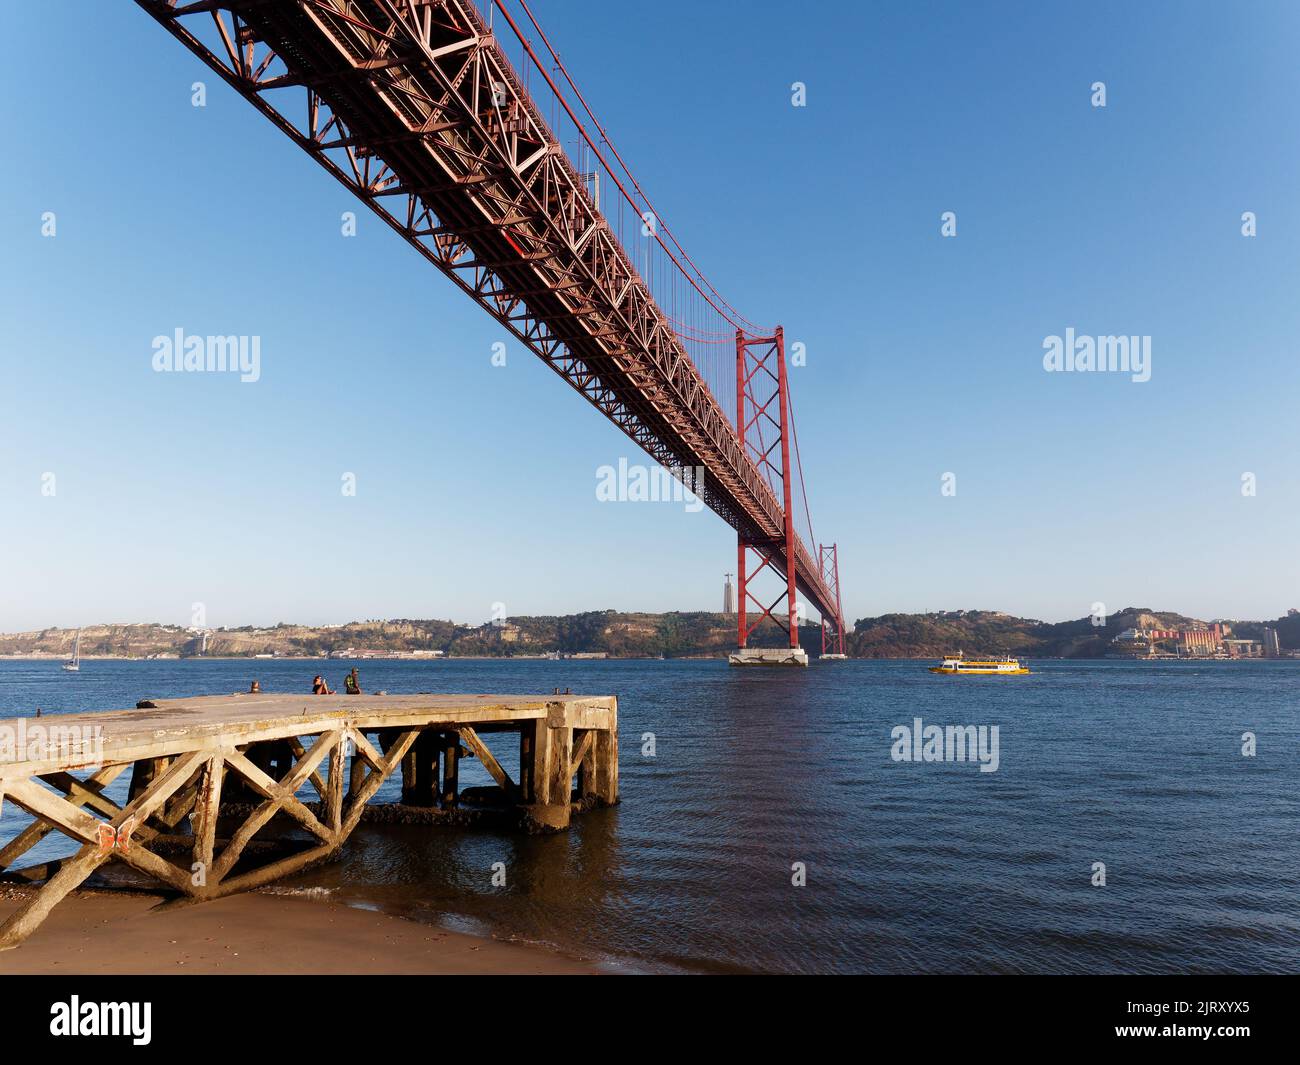 Le Ponte 25 de Abril (pont du 25th avril) enjambant le Tage à Lisbonne, Portugal. Jetée et plage à gauche. Banque D'Images